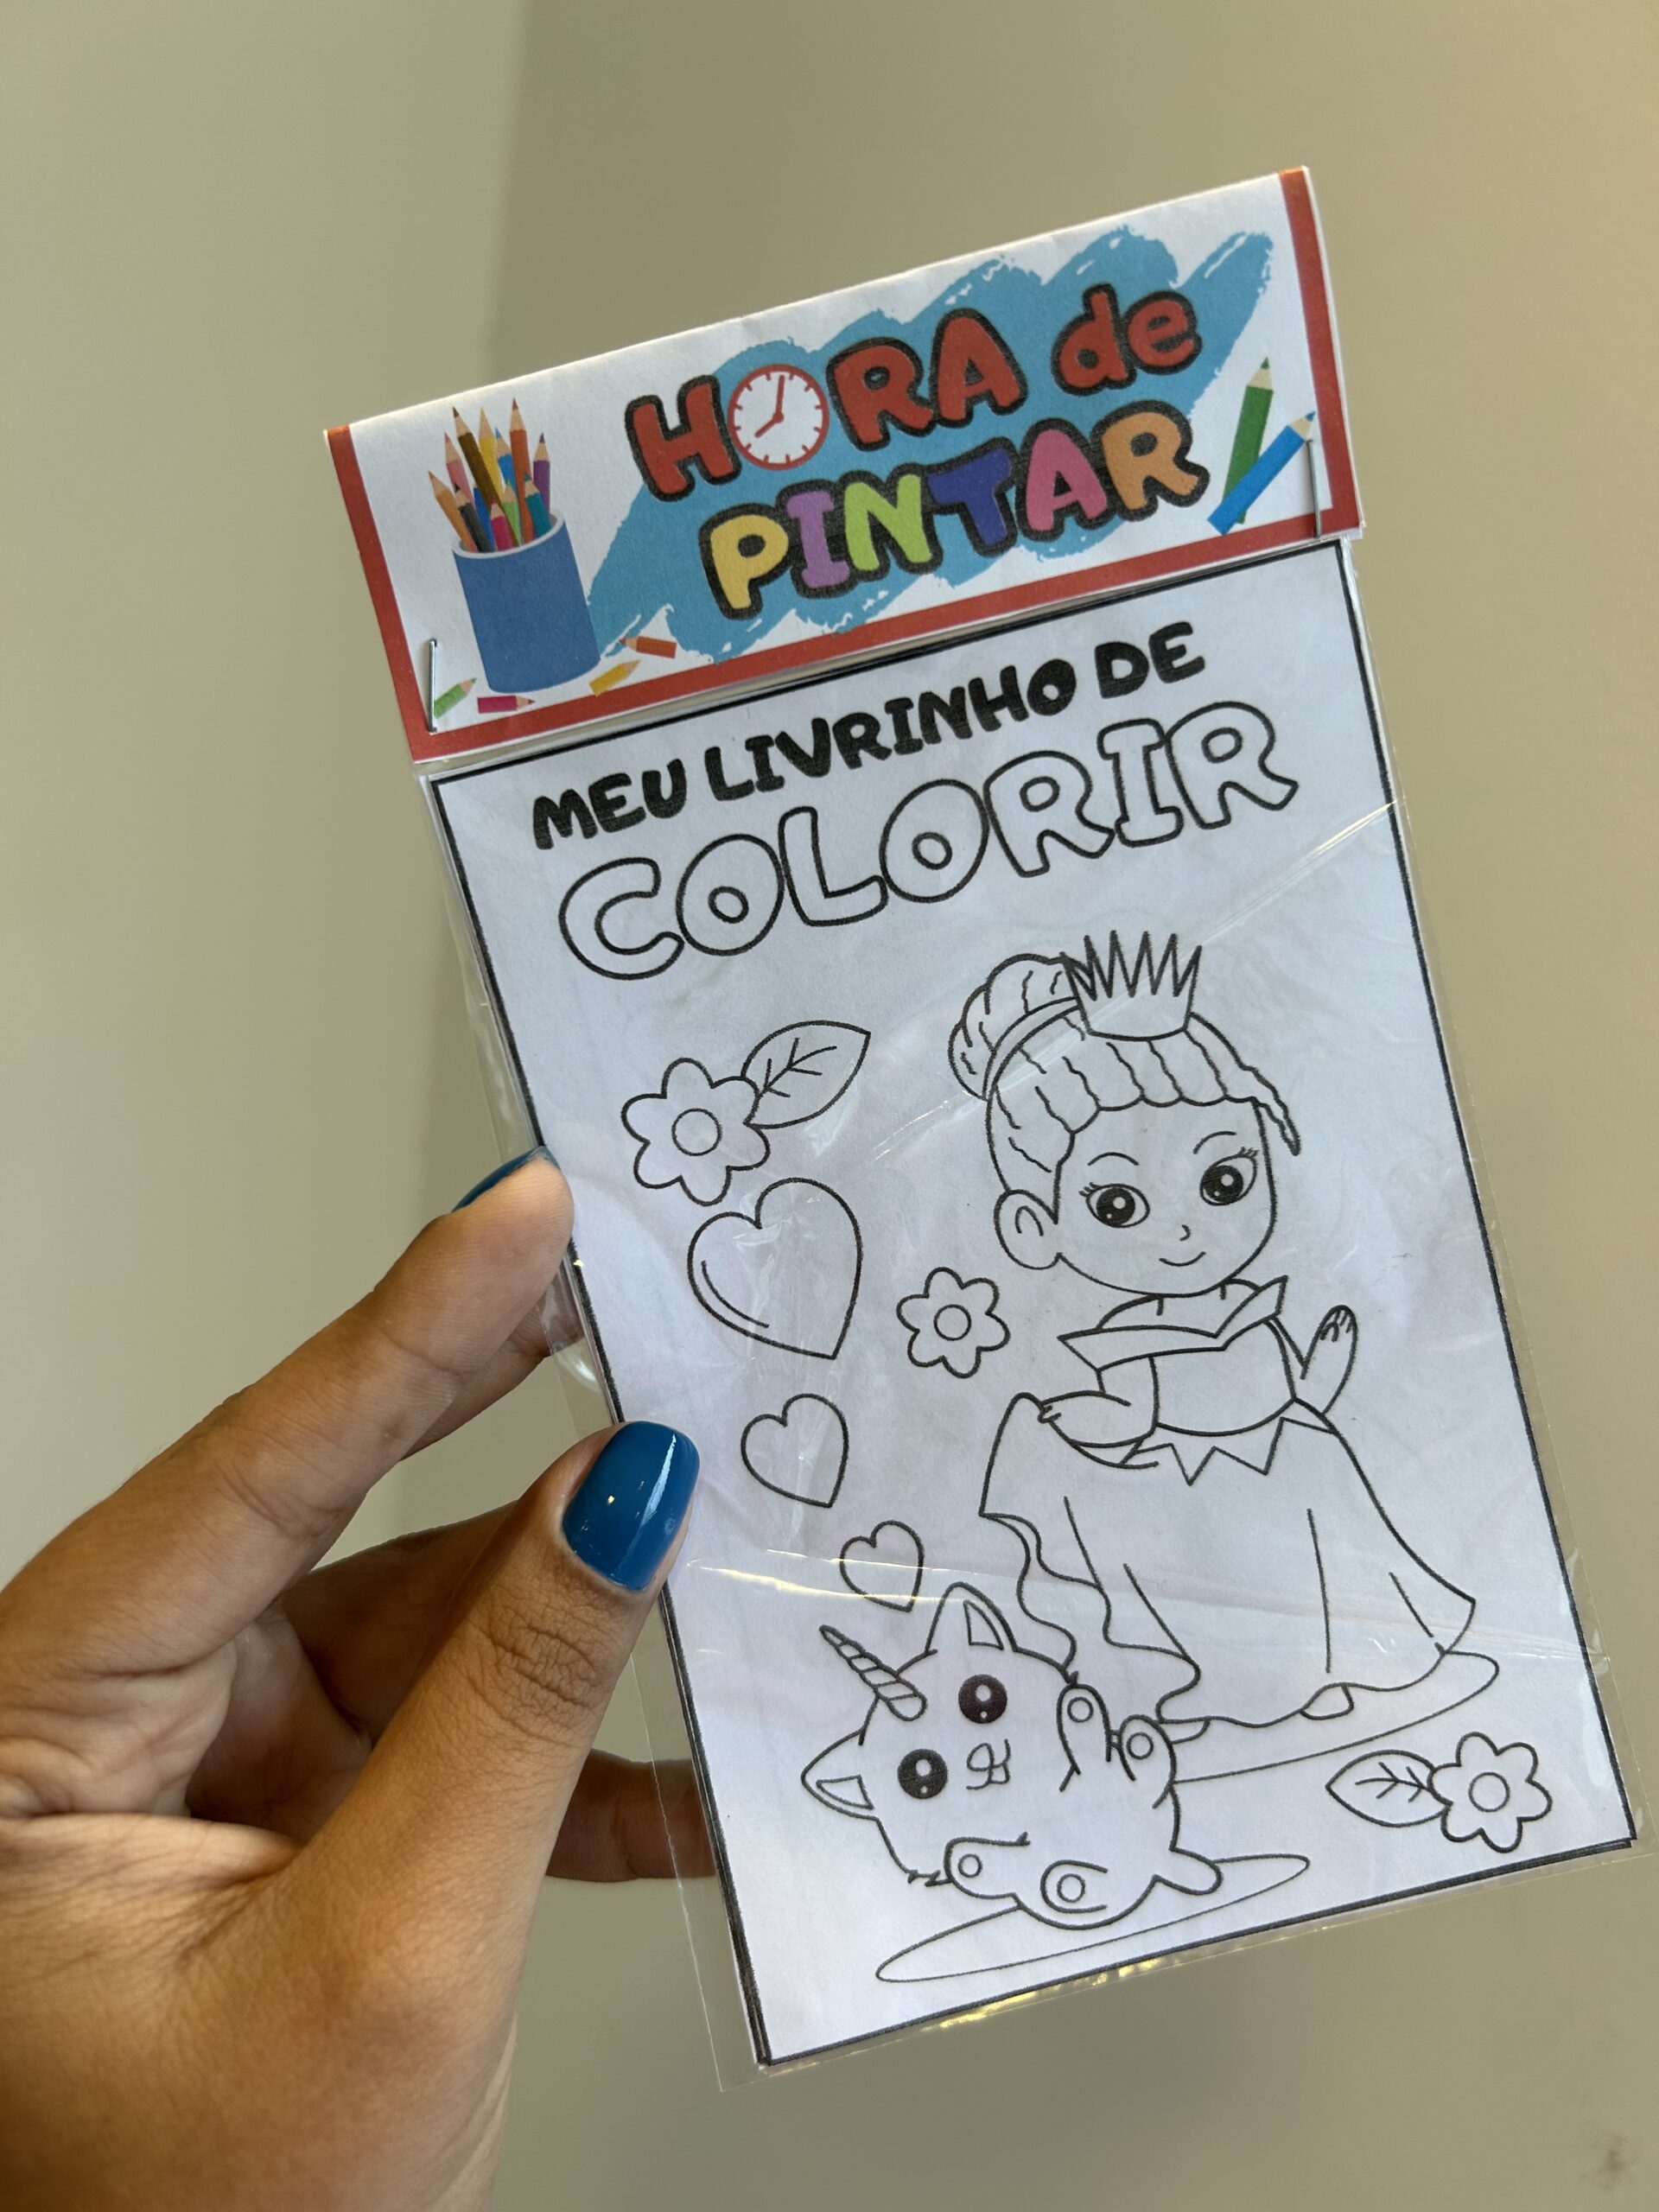 Desenhos para Colorir do Dia das Crianças 2023